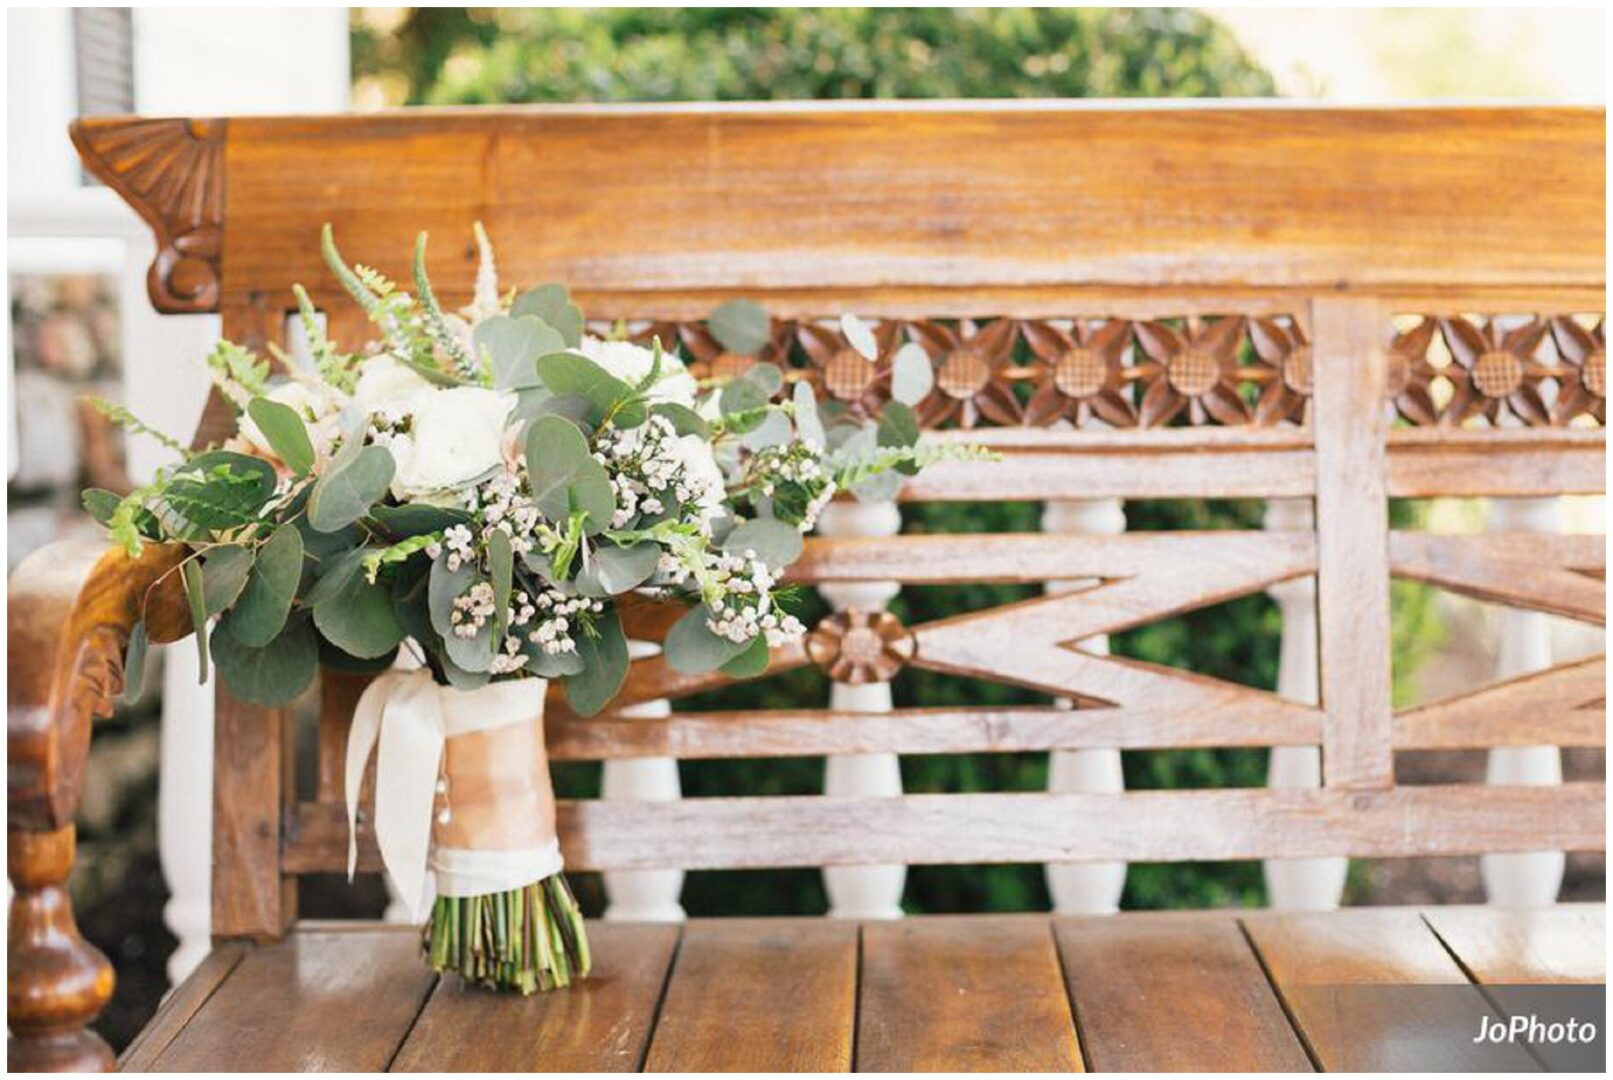 knoxville-wedding-florist-daras-garden-flowers-pink_5179.jpg